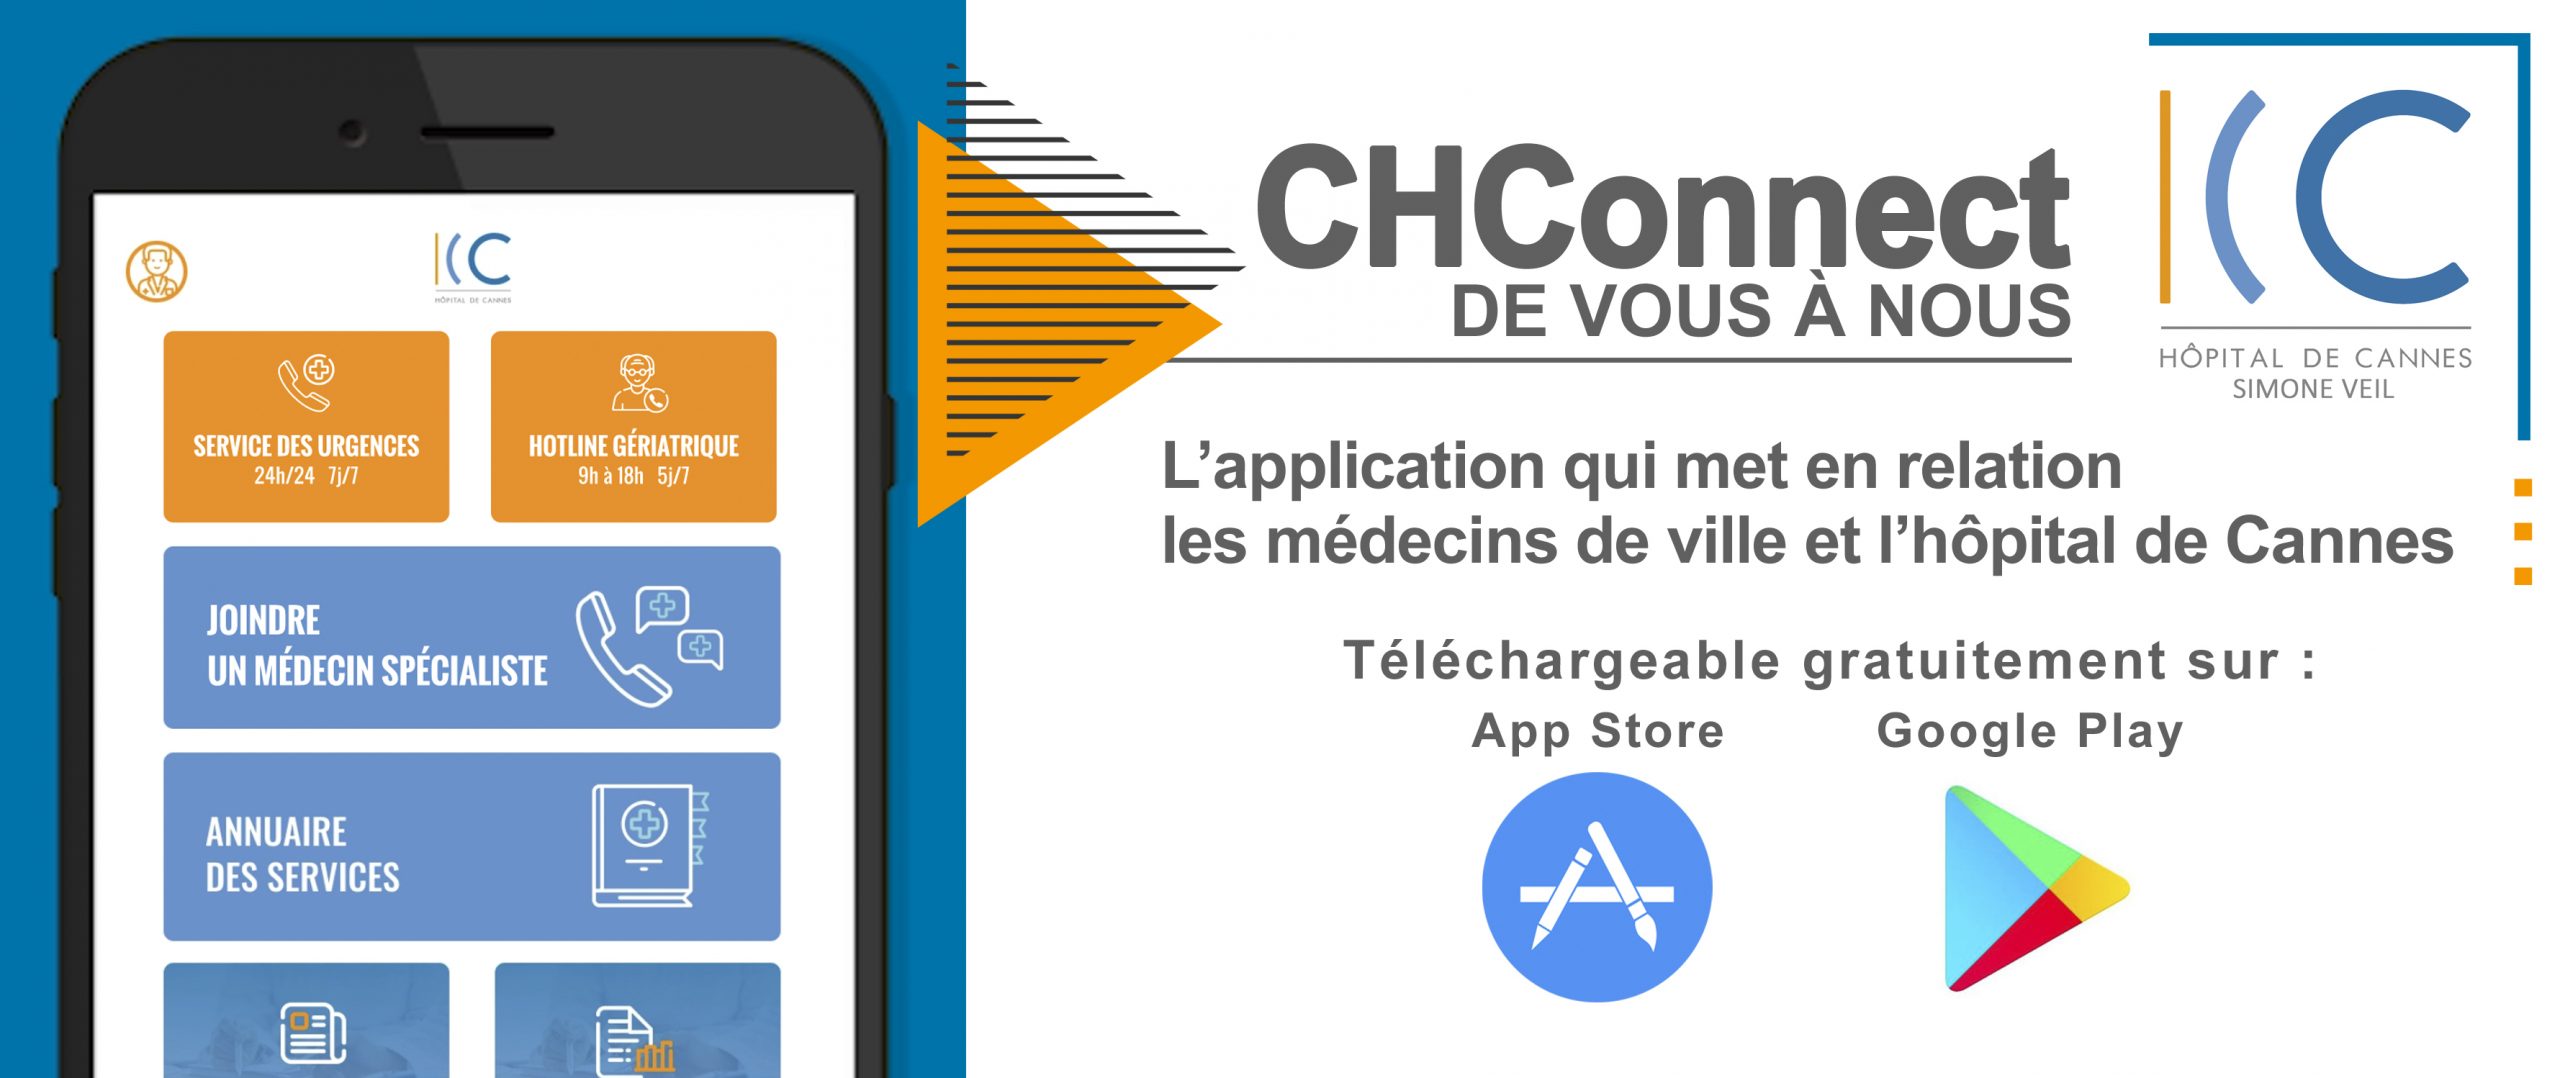 illustration L’hôpital de Cannes – Simone Veil propose une nouvelle application mobile destinée aux médecins de ville